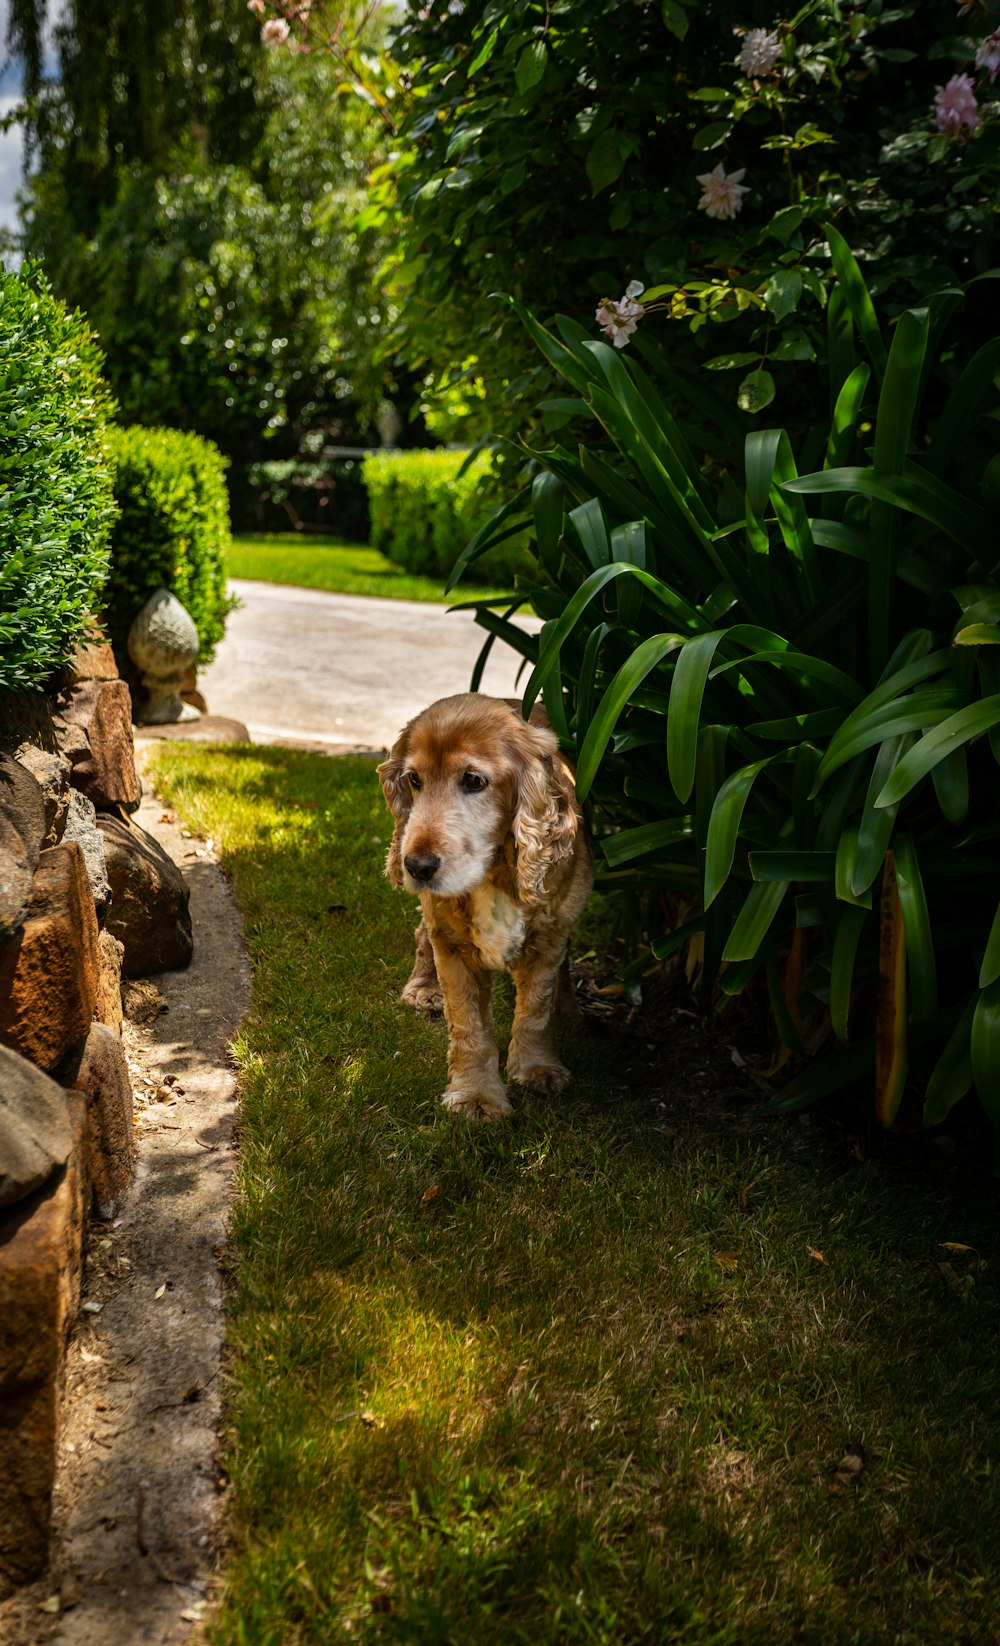 Brauner Hund steht neben Grünpflanze im Garten